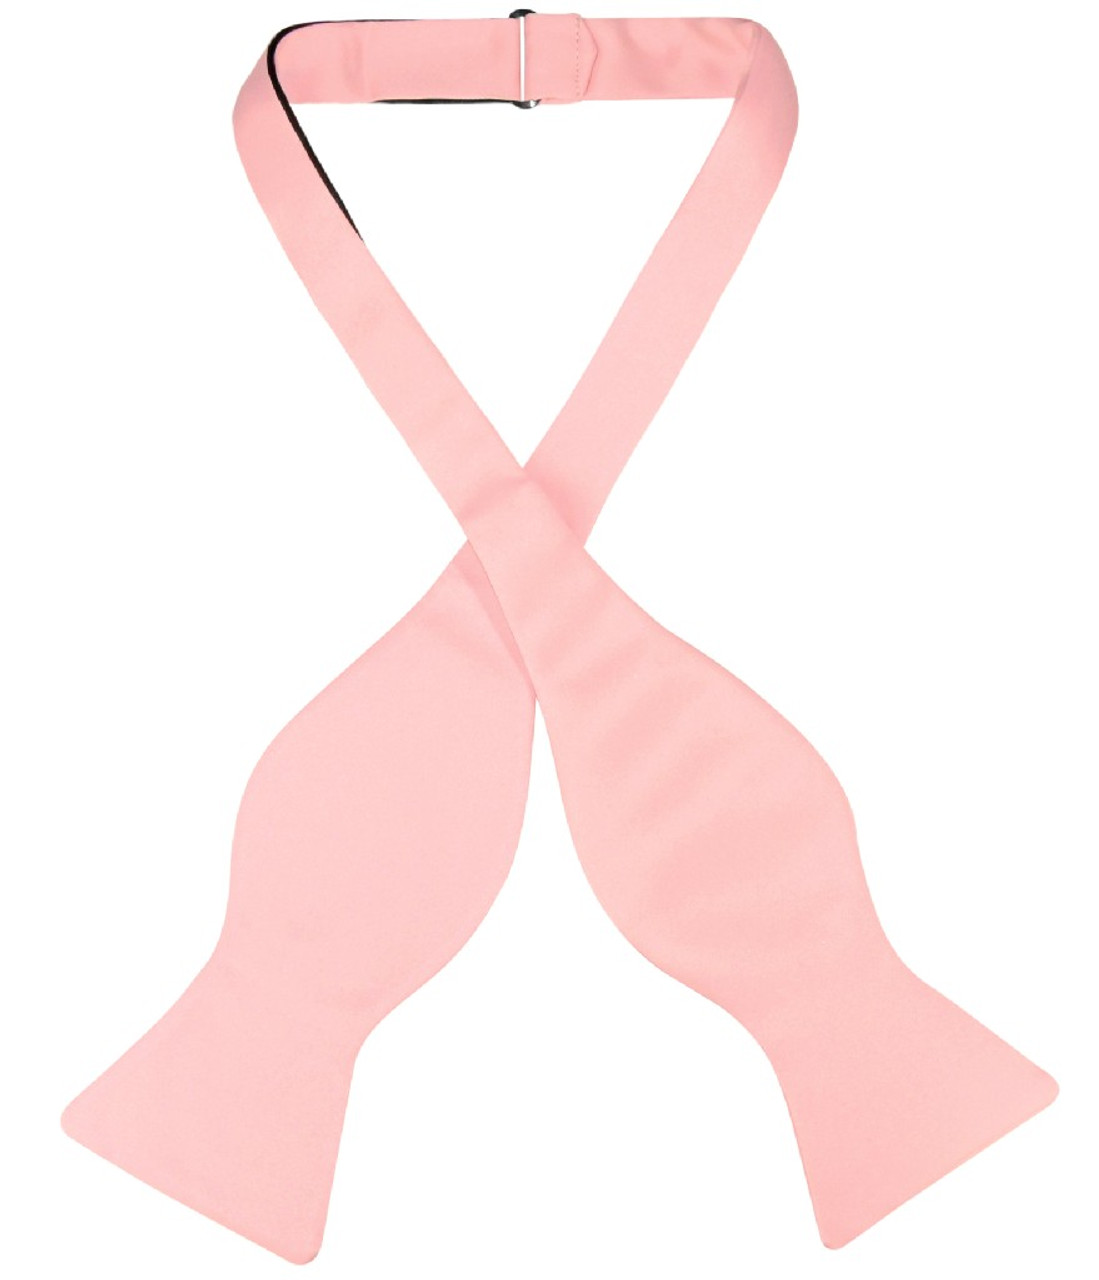 Vesuvio Napoli Self Tie Bow Tie Solid Dusty Pink Color Mens BowTie